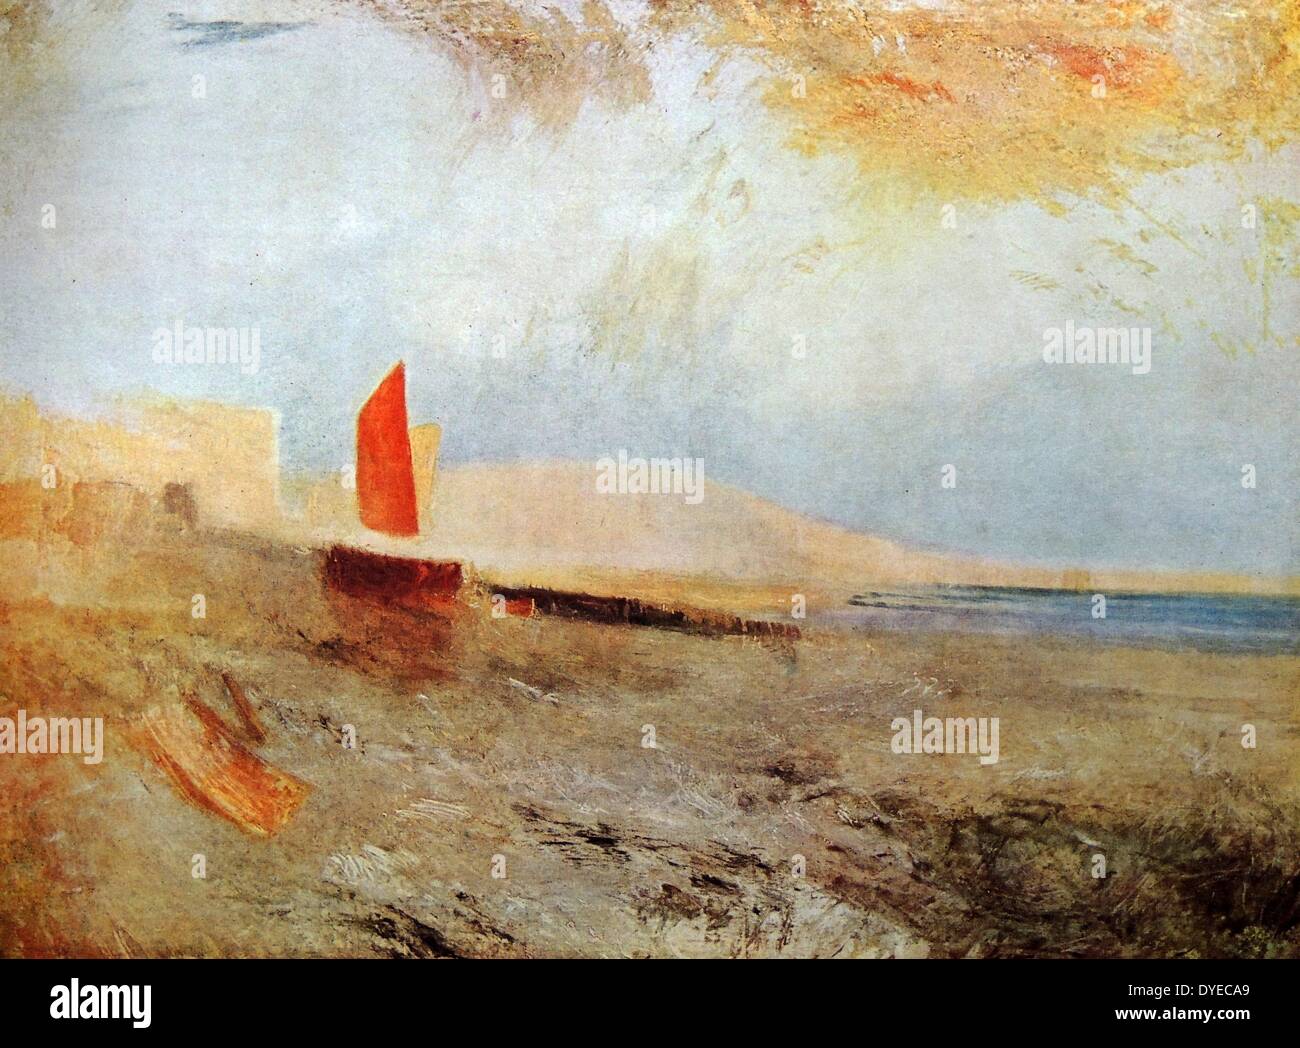 La peinture de paysage à l'aquarelle intitulée "Hastings". La peinture représente un seul bateau à terre avec un voile orange. Par Joseph Mallord William Turner (1775 - 1851) peintre romantique anglais. En date du 1818. Banque D'Images